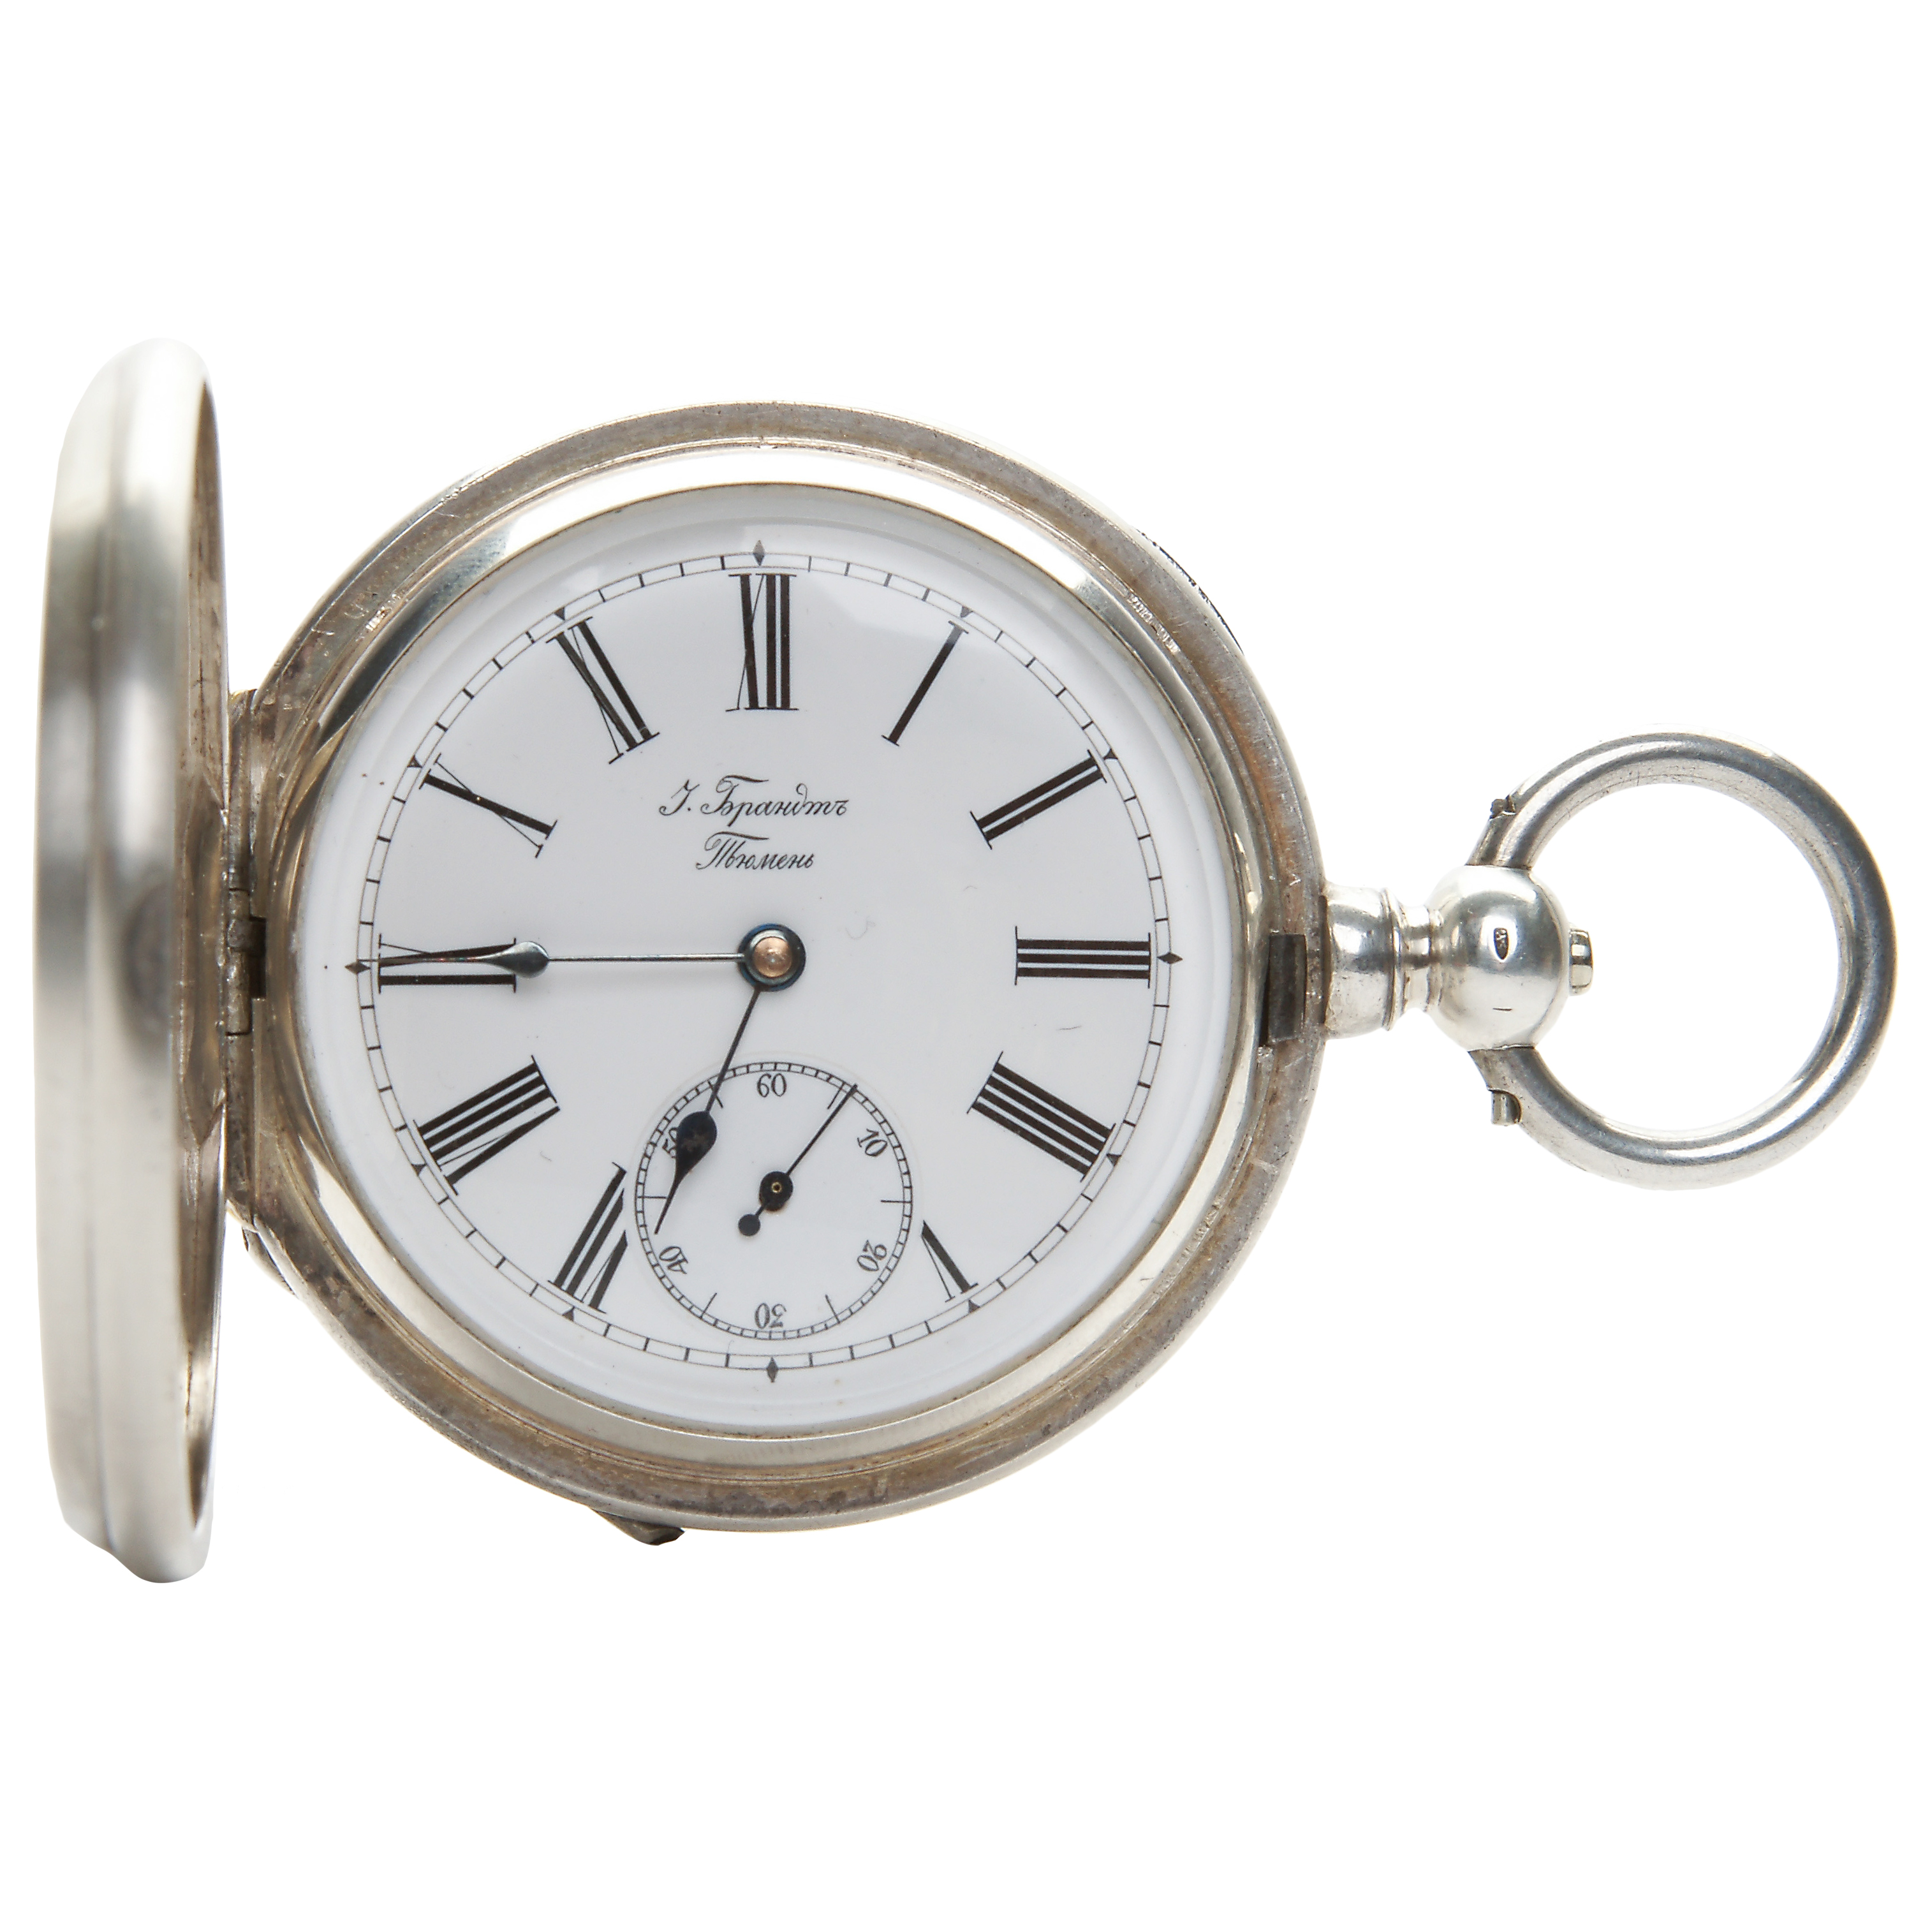 Время часов в израиле. Серебряные карманные часы. Чайка часы карманные серебряные. Карманные серебрянные часы фирмы Roskopf.